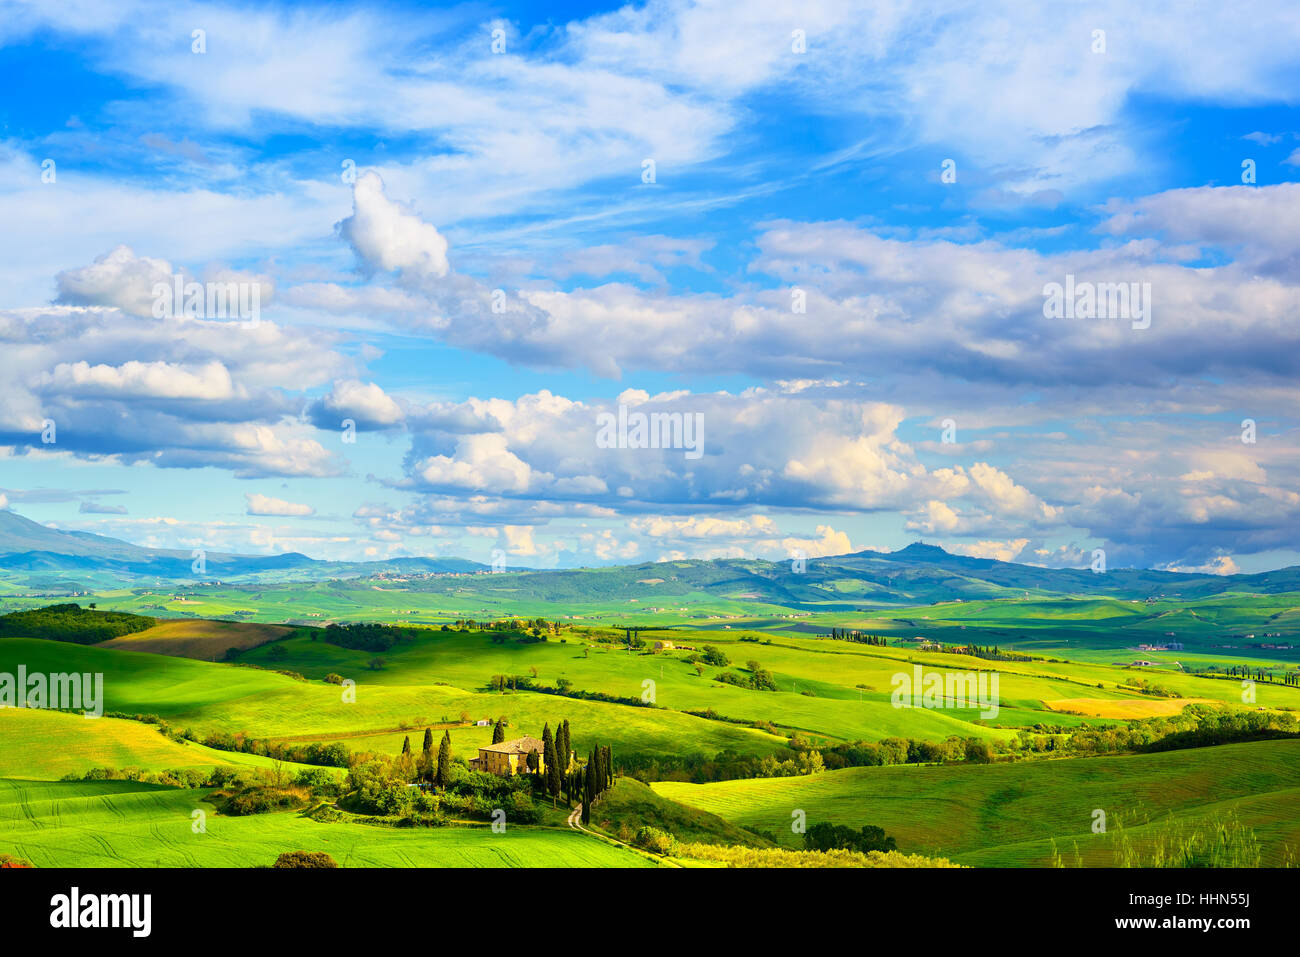 Toscana, tierras de cultivo y el paisaje de cipreses, campos verdes. San Quirico de Orcia, Italia, Europa. Foto de stock